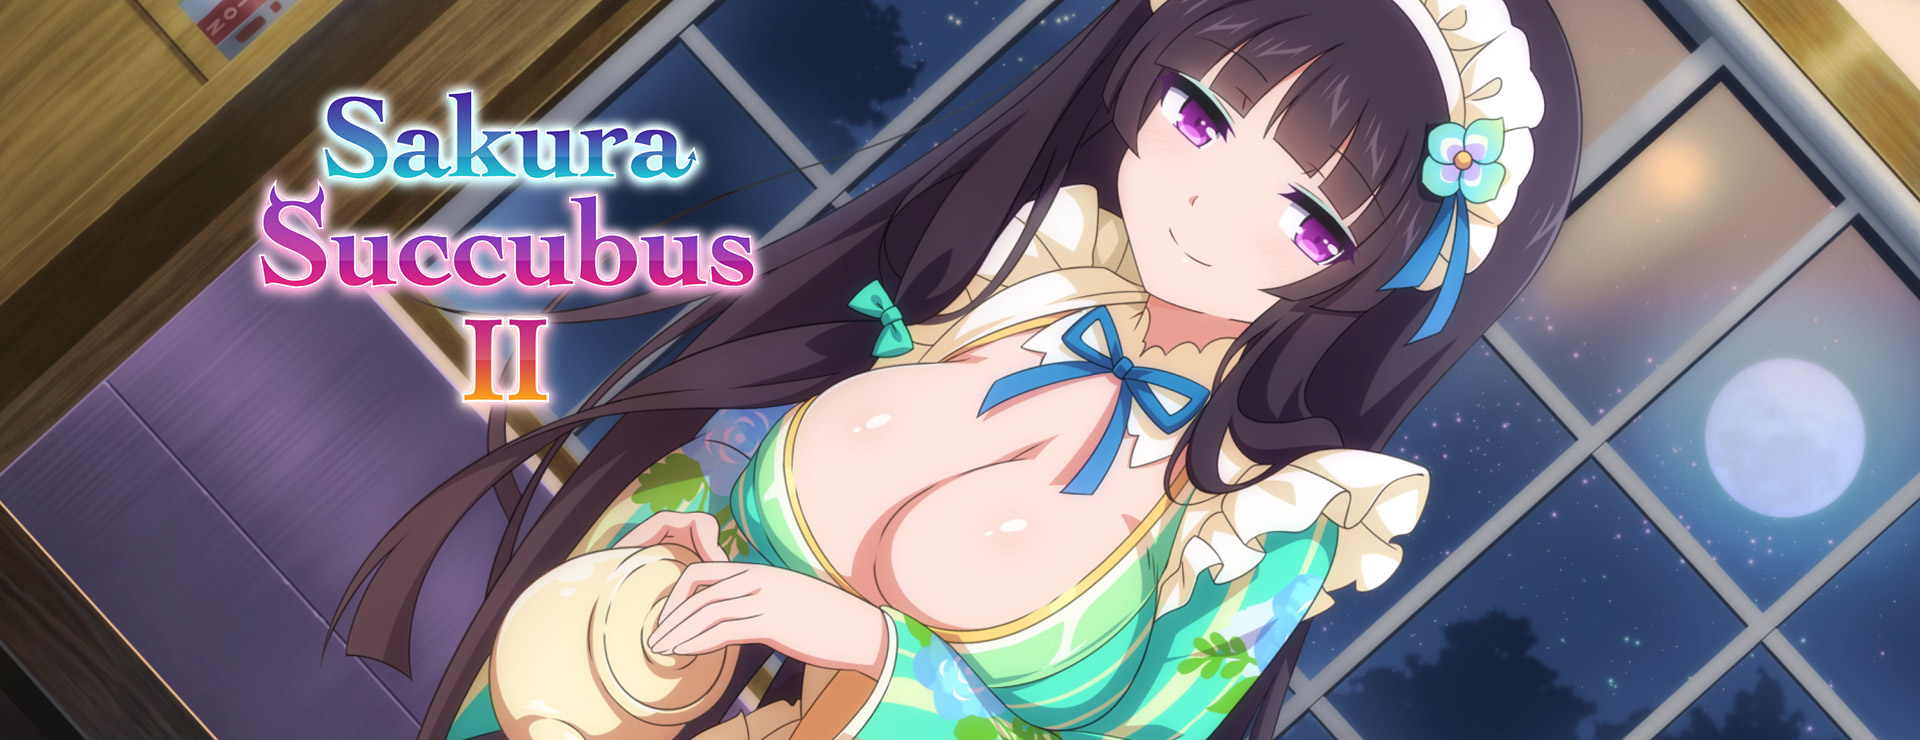 Sakura Succubus 2 - Japanisches Adventure Spiel